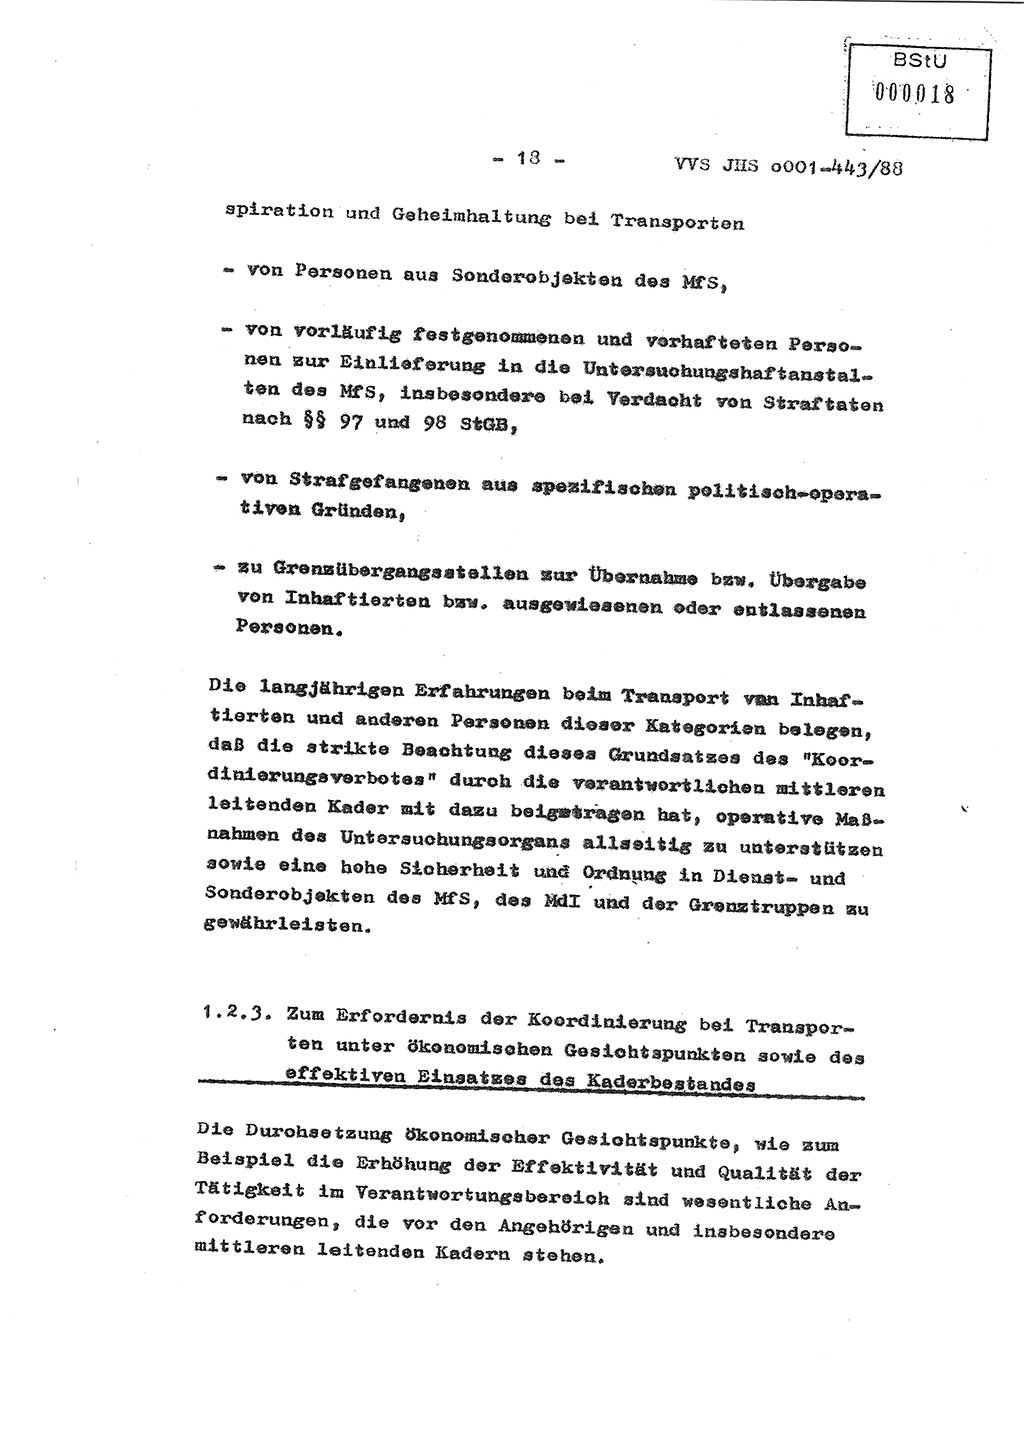 Diplomarbeit Hauptmann Michael Rast (Abt. ⅩⅣ), Major Bernd Rahaus (Abt. ⅩⅣ), Ministerium für Staatssicherheit (MfS) [Deutsche Demokratische Republik (DDR)], Juristische Hochschule (JHS), Vertrauliche Verschlußsache (VVS) o001-443/88, Potsdam 1988, Seite 18 (Dipl.-Arb. MfS DDR JHS VVS o001-443/88 1988, S. 18)